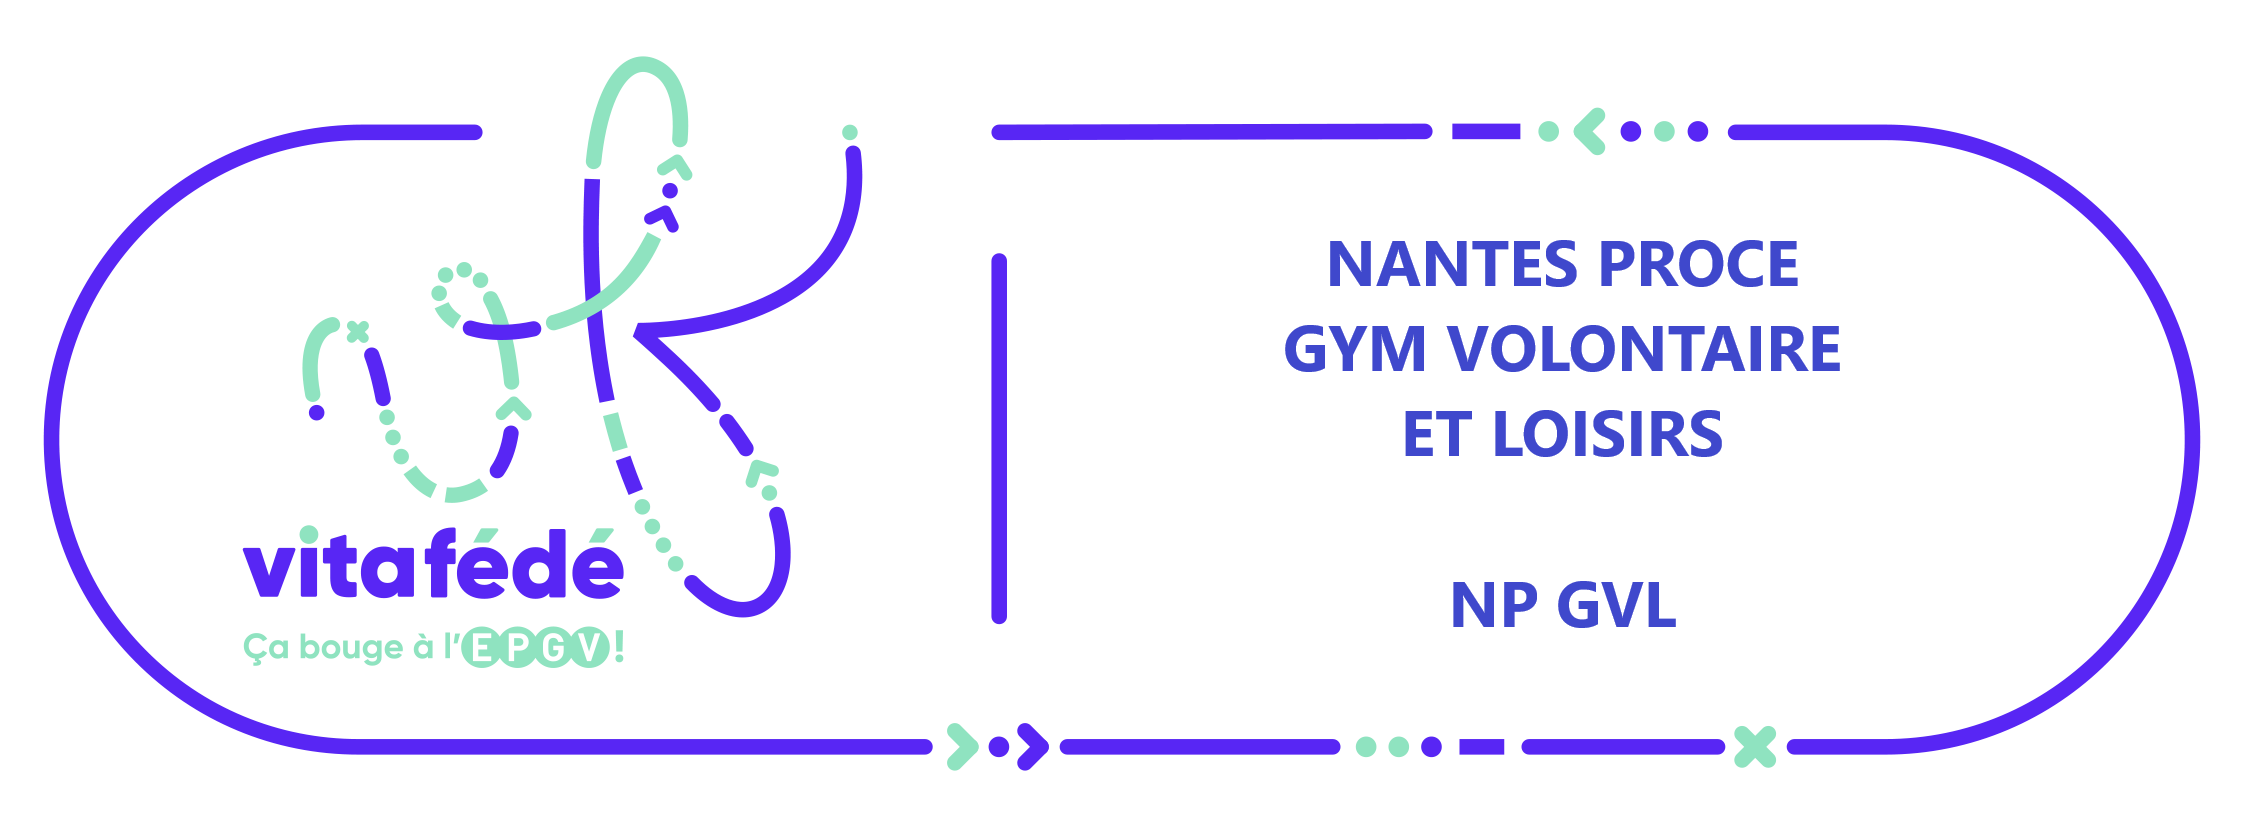 NANTES PROCE GYM VOLONTAIRE ET LOISIRS (NP GVL)